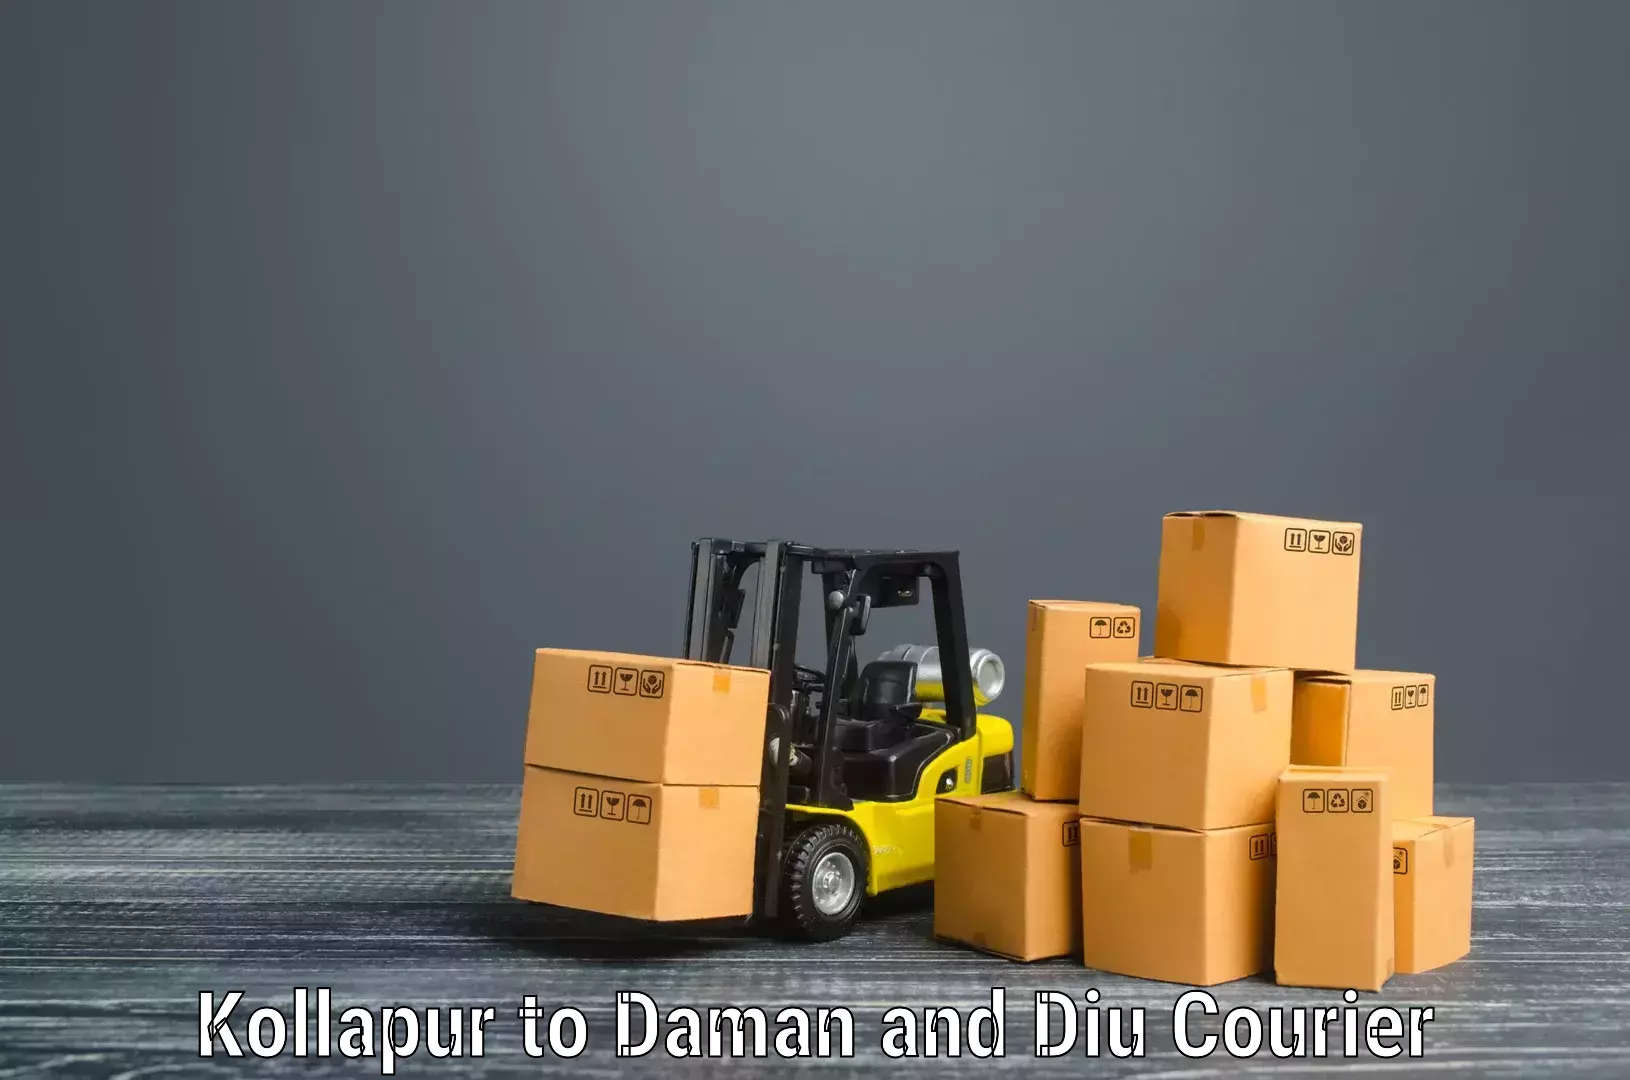 Expert goods movers Kollapur to Daman